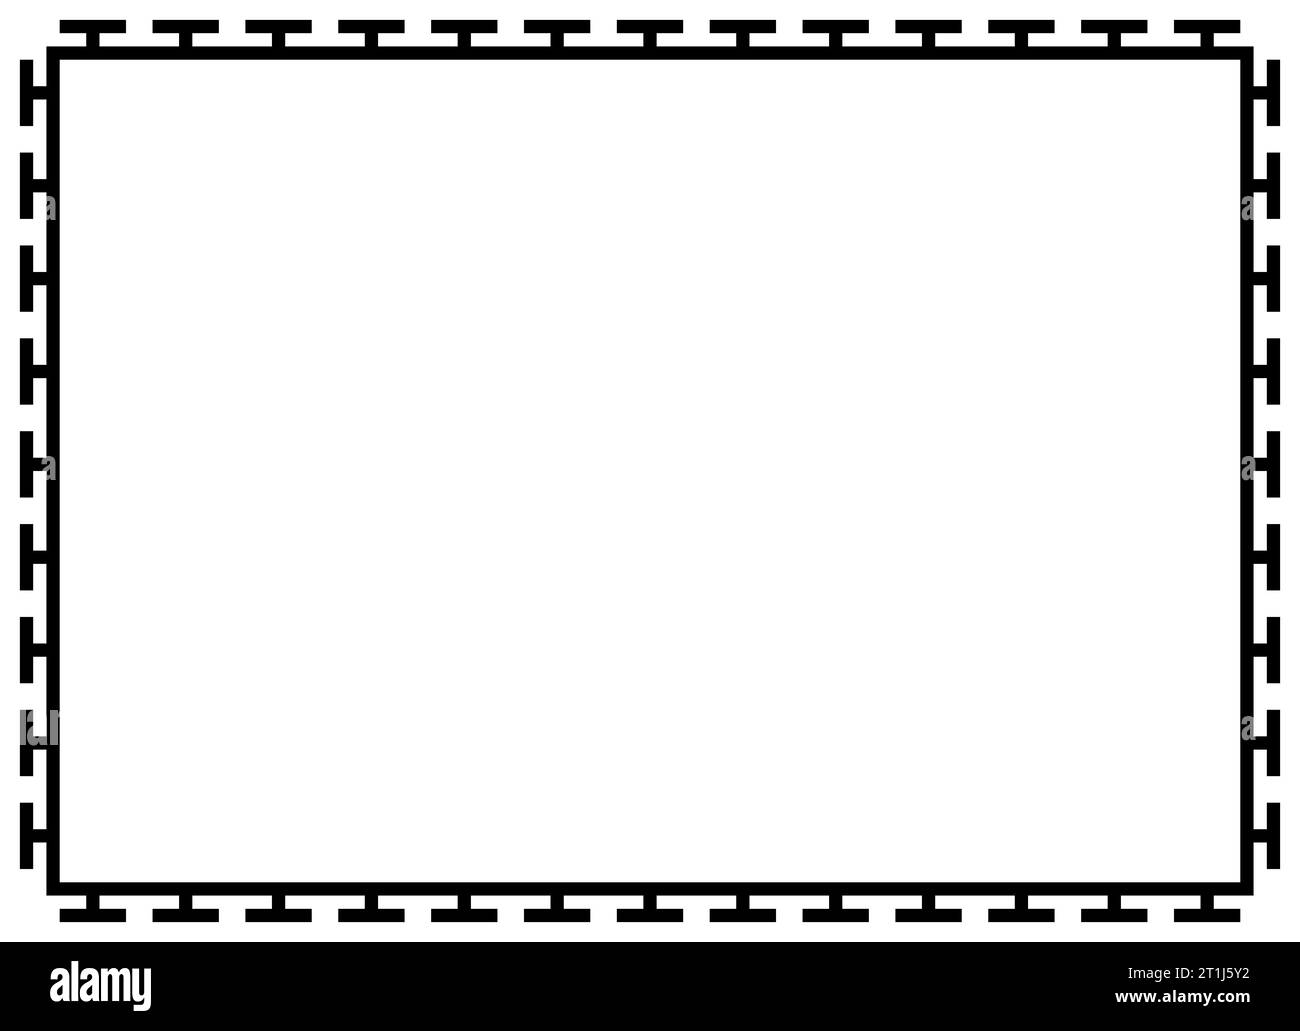 Griechische Rahmenornamente, Mäander. Quadratischer mäanderförmiger Rand aus einem wiederholten griechischen Motiv Vektor-Illustration auf weißem Hintergrund. Stockfoto